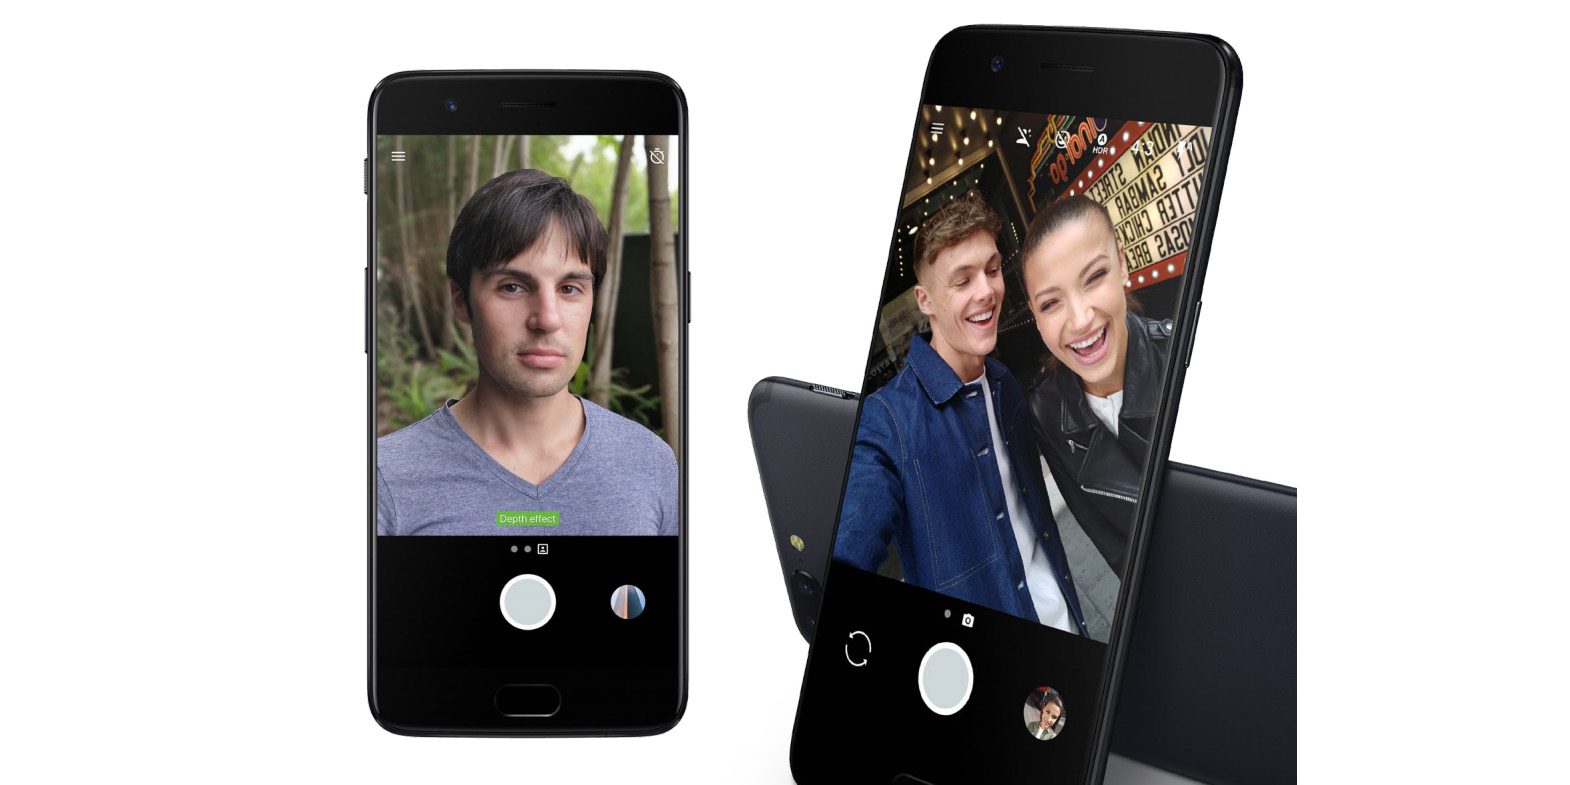 Le OnePlus 5 est officiel avec Snapdragon 835, 8 Go de RAM, double caméra de 16MP…